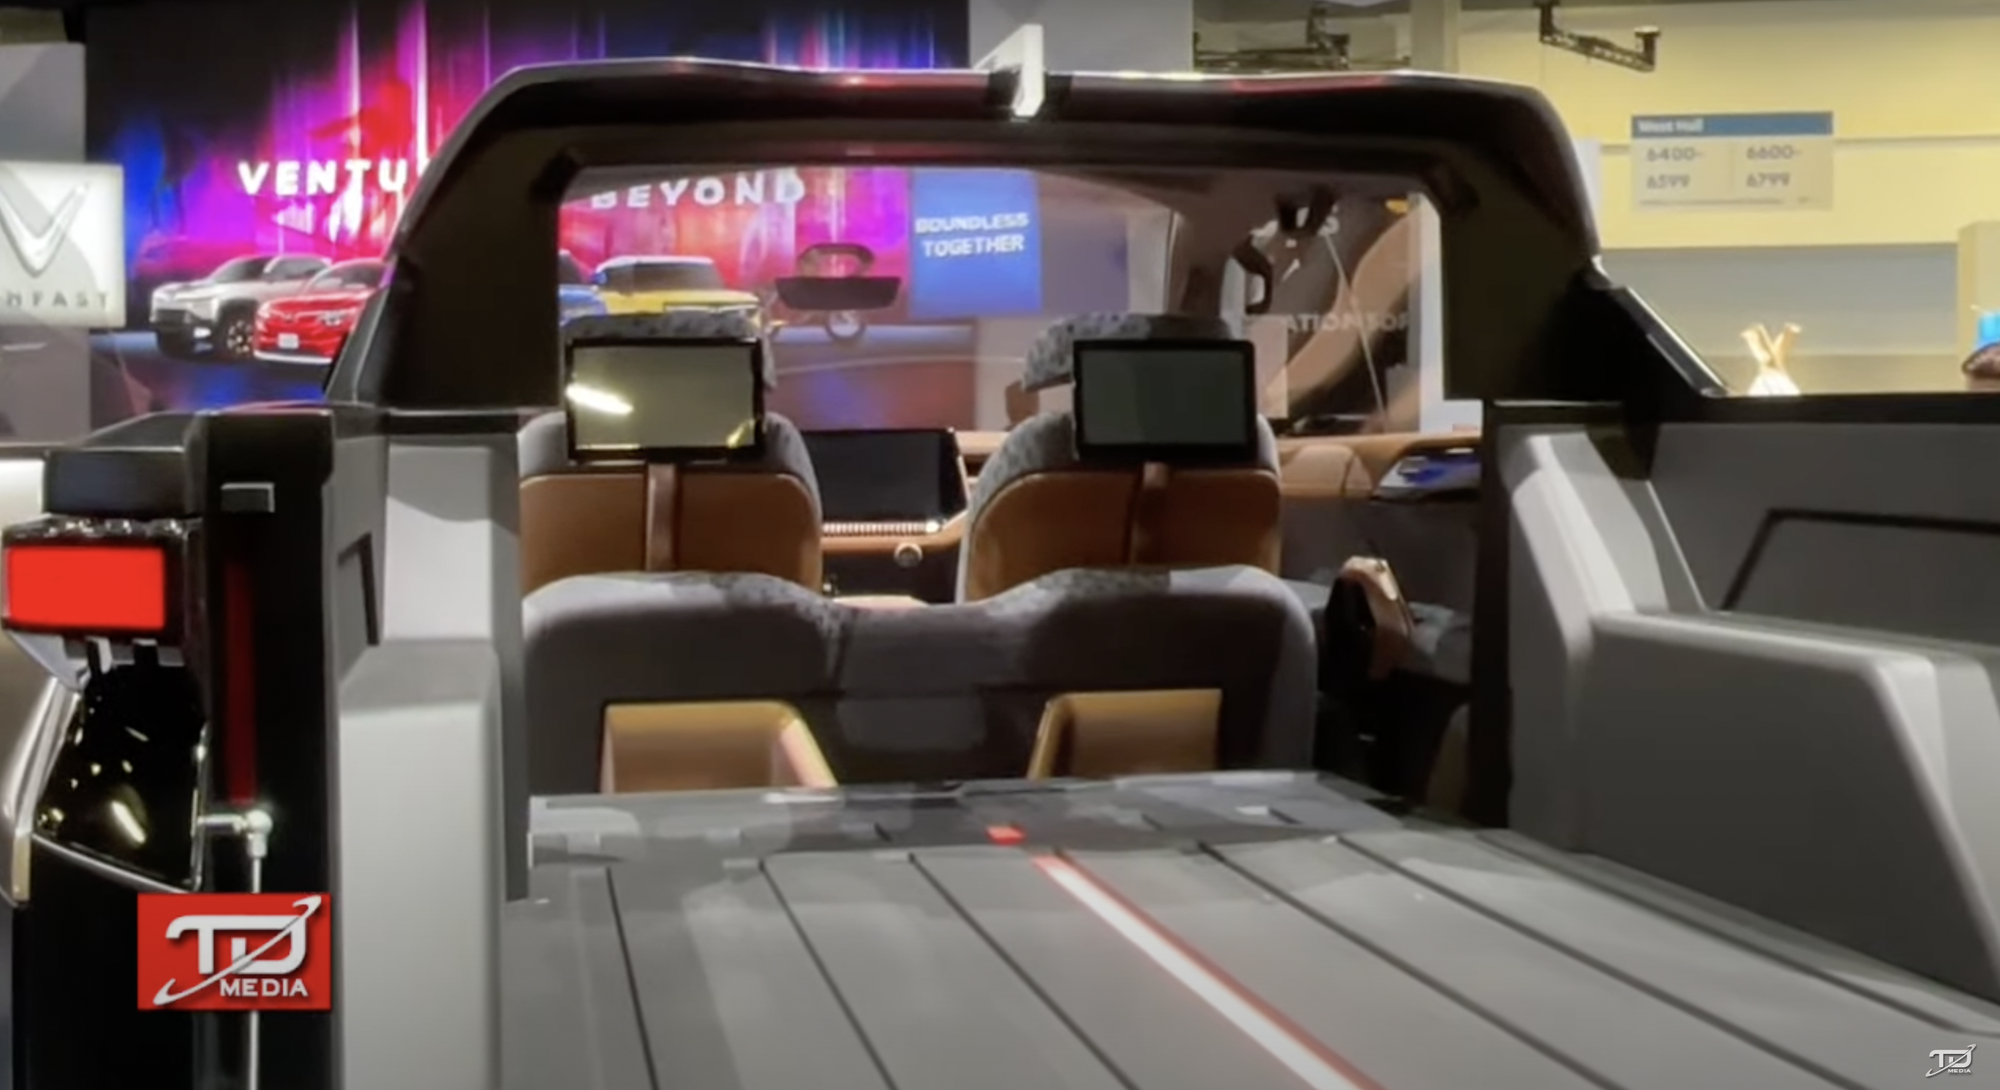 Bán tải VinFast ra mắt với thiết kế như xe viễn tưởng: Cửa mở ngược như Rolls-Royce, trần kính cực lớn - Ảnh 5.